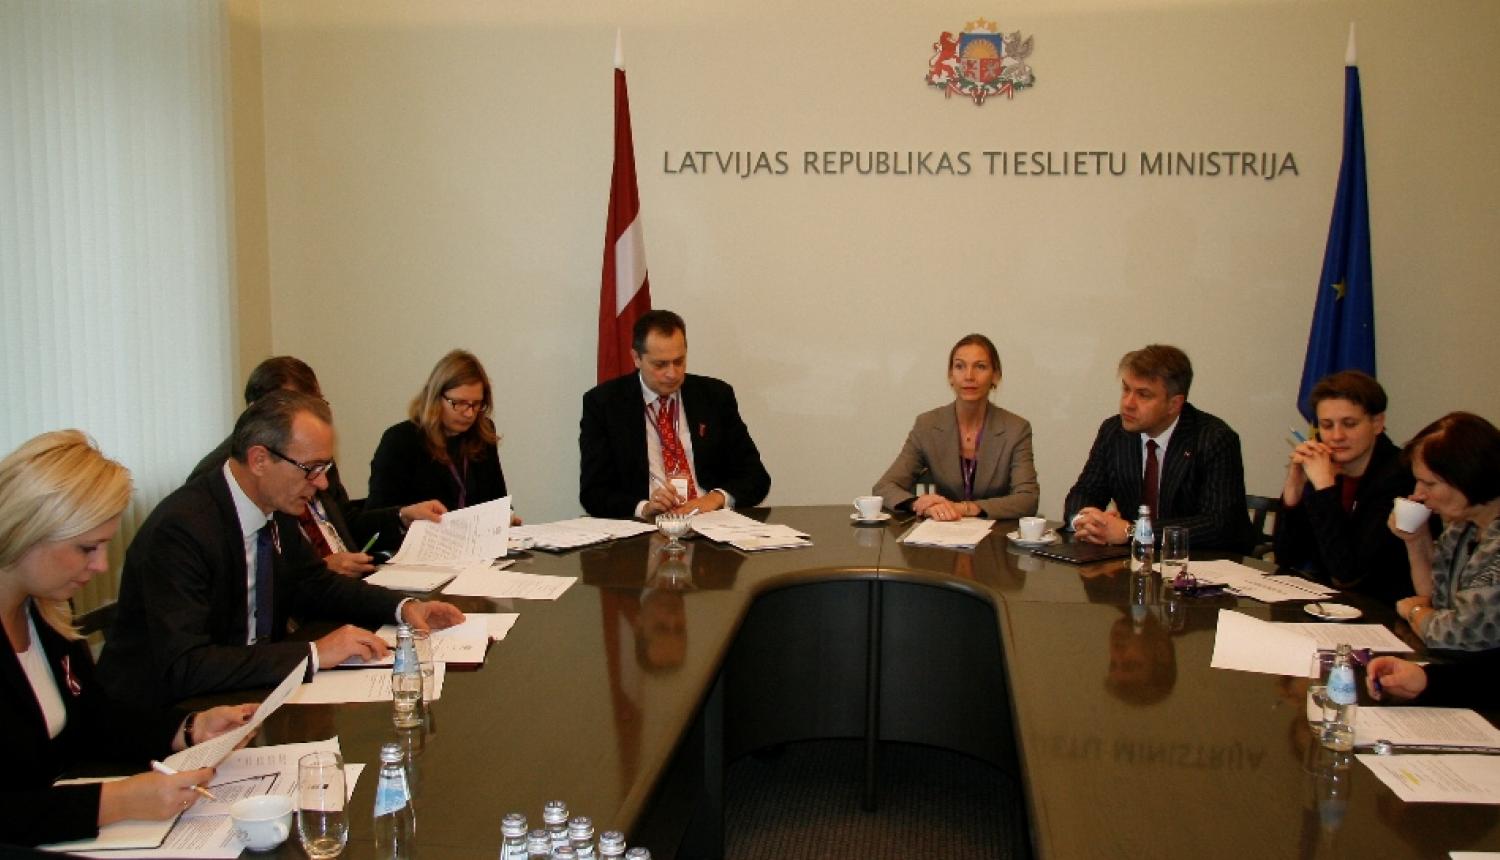 Meklē risinājumus Latvijas bērnu tiesību aizsardzības paplašināšanai ārvalstīs